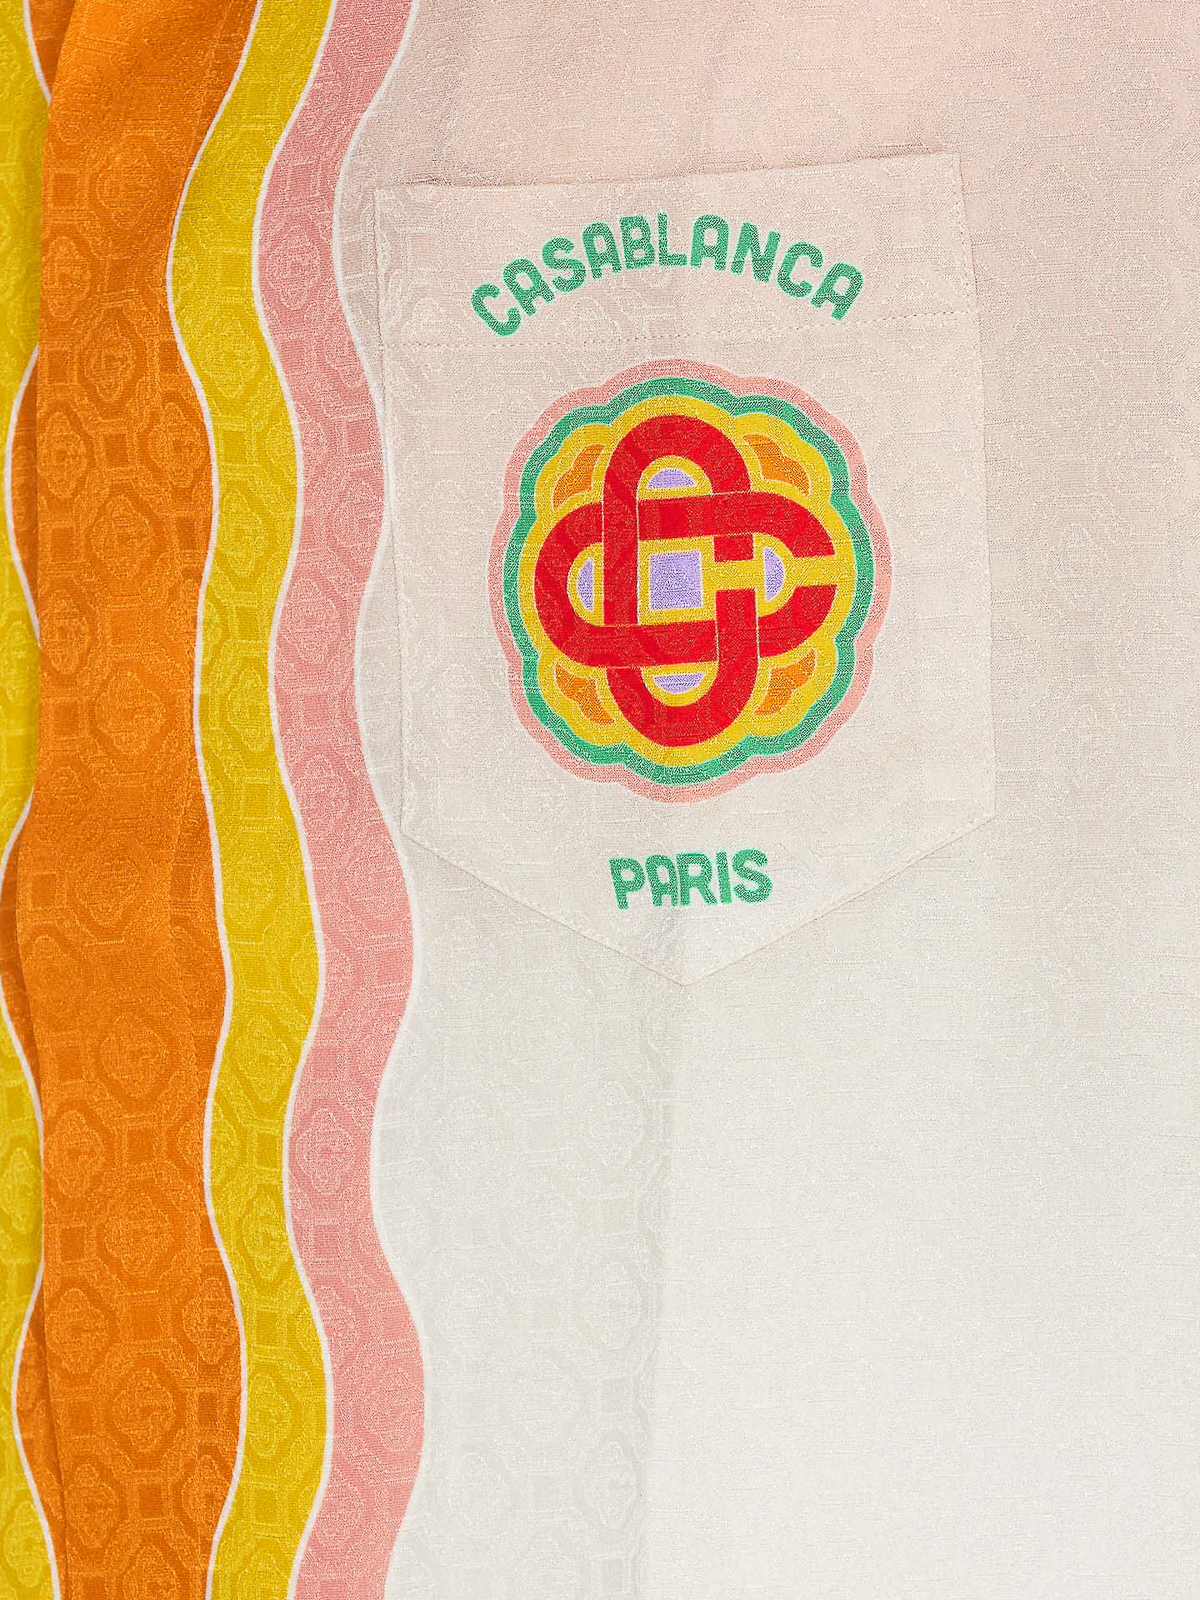 CASABLANCA Rainbow Monogram Shirt in Orange